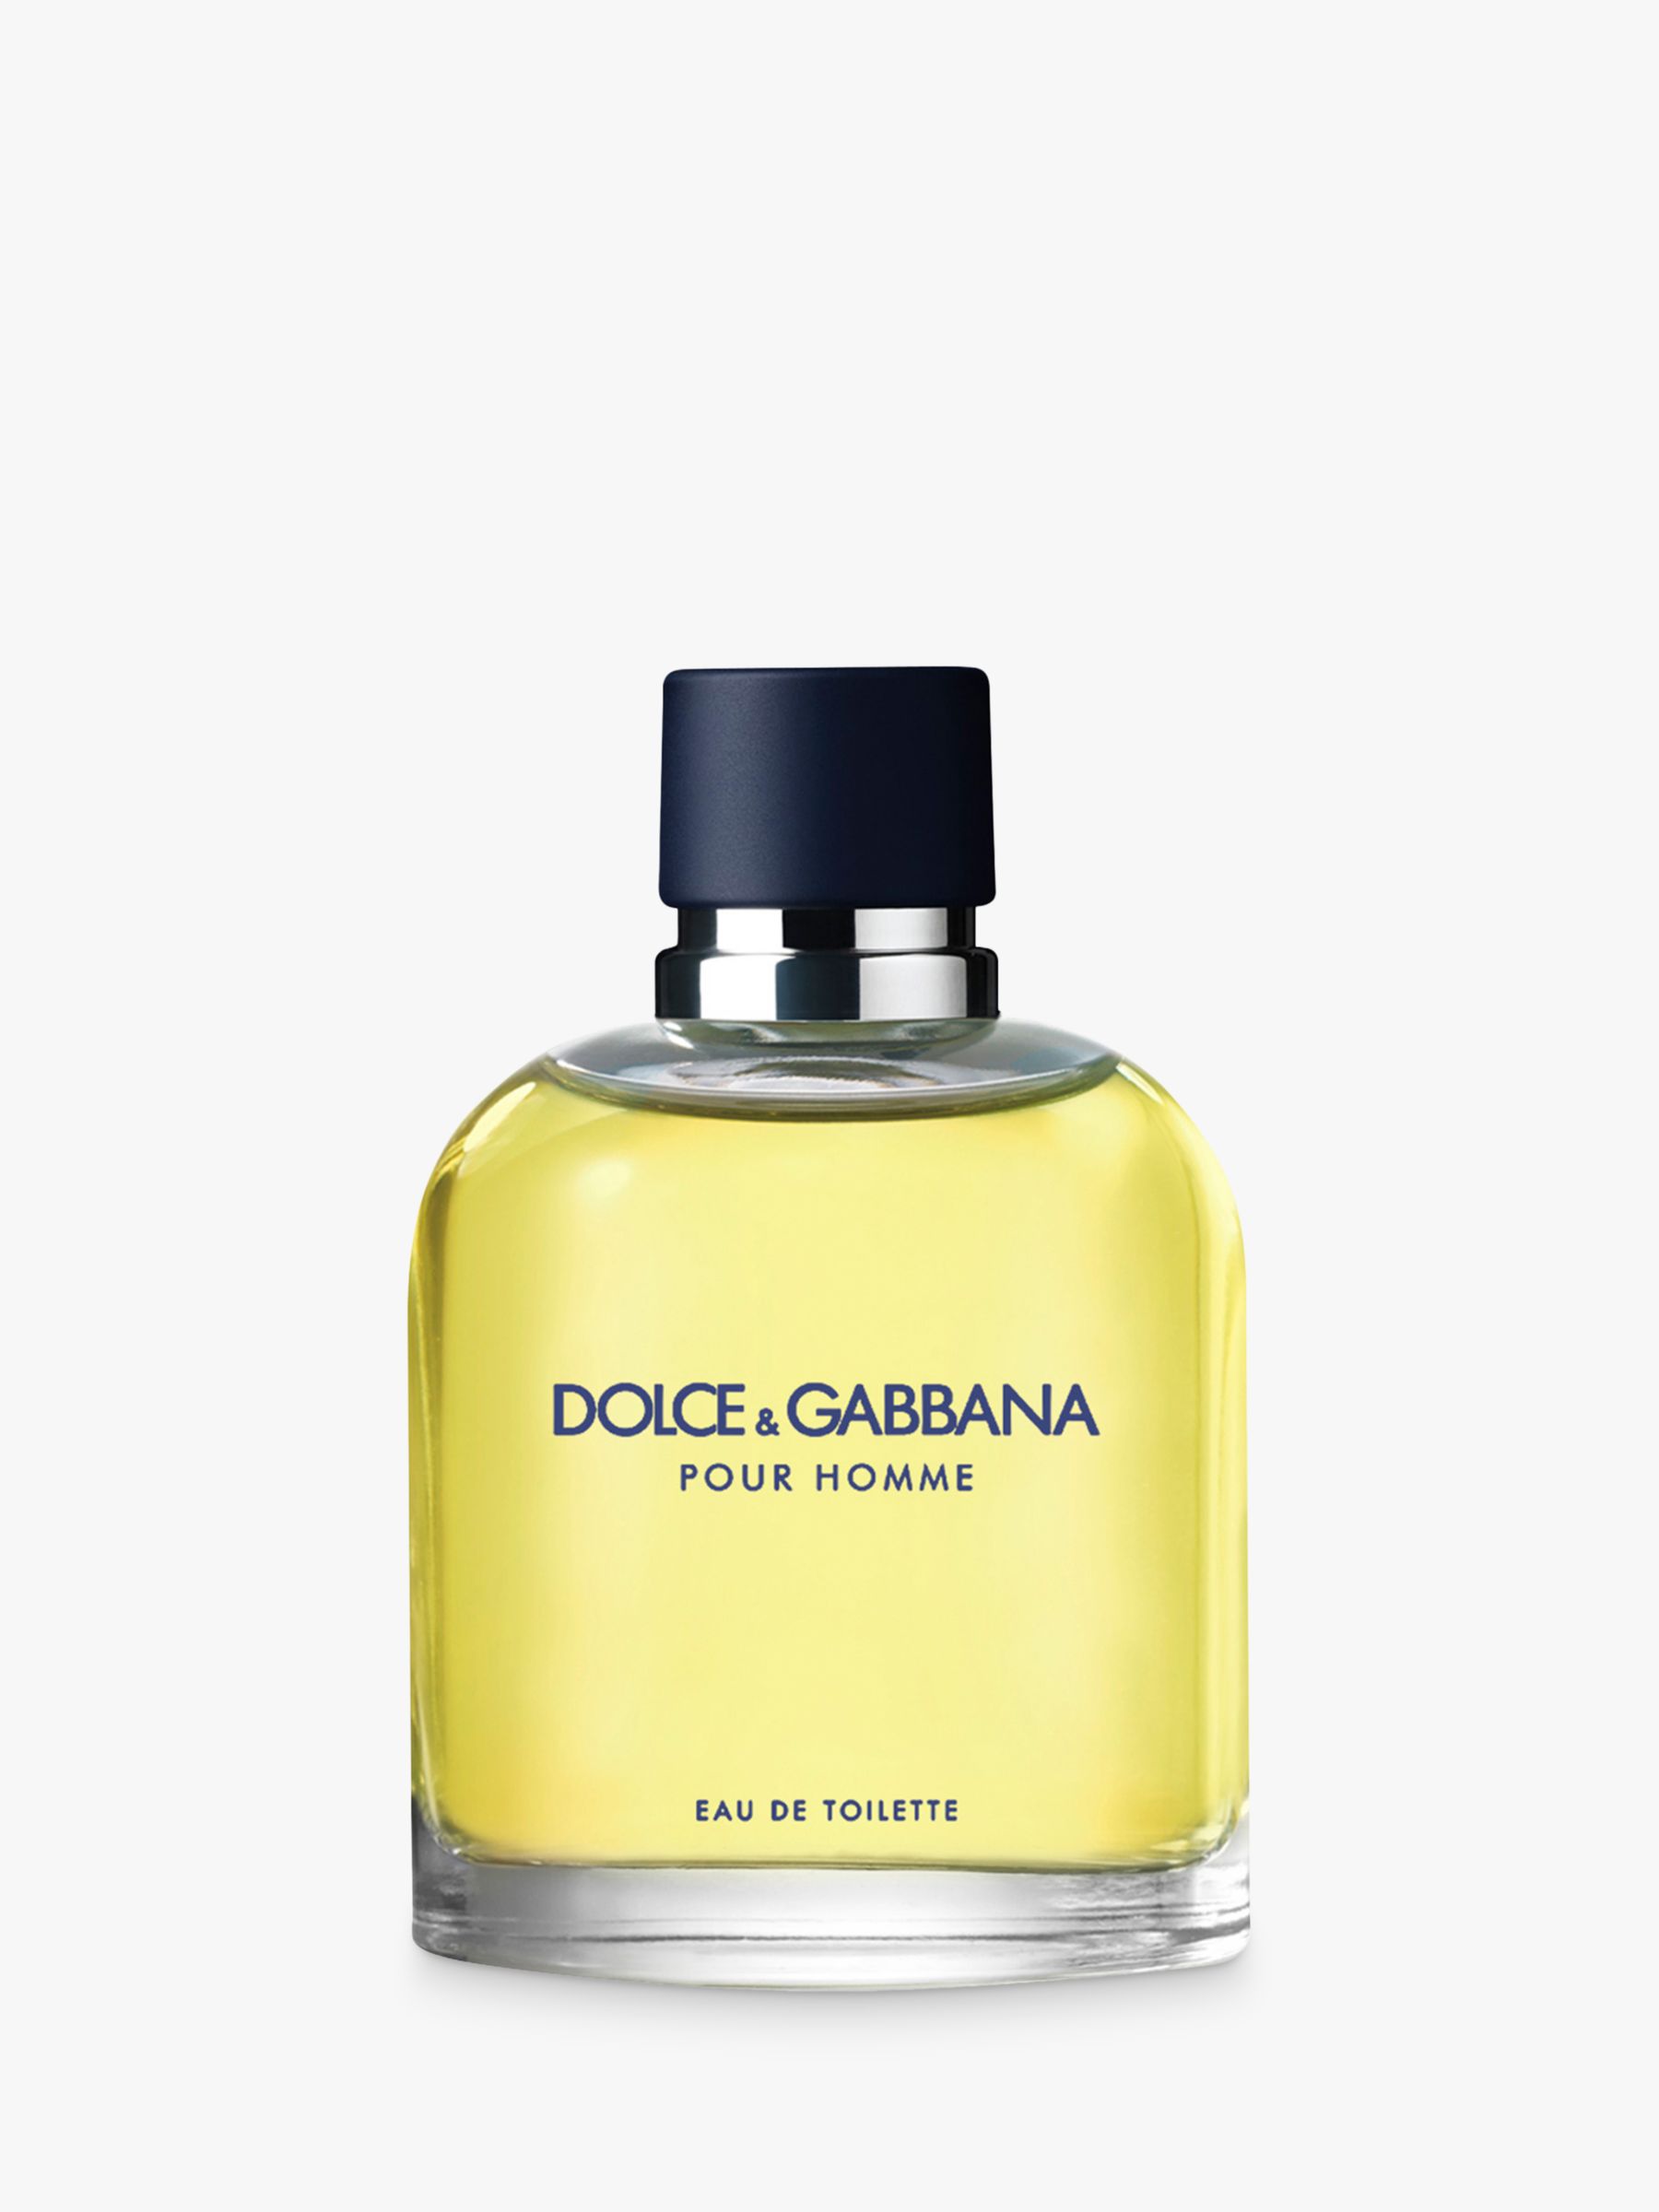 Dolce & Gabbana Pour Homme Eau de Toilette, 125ml 1